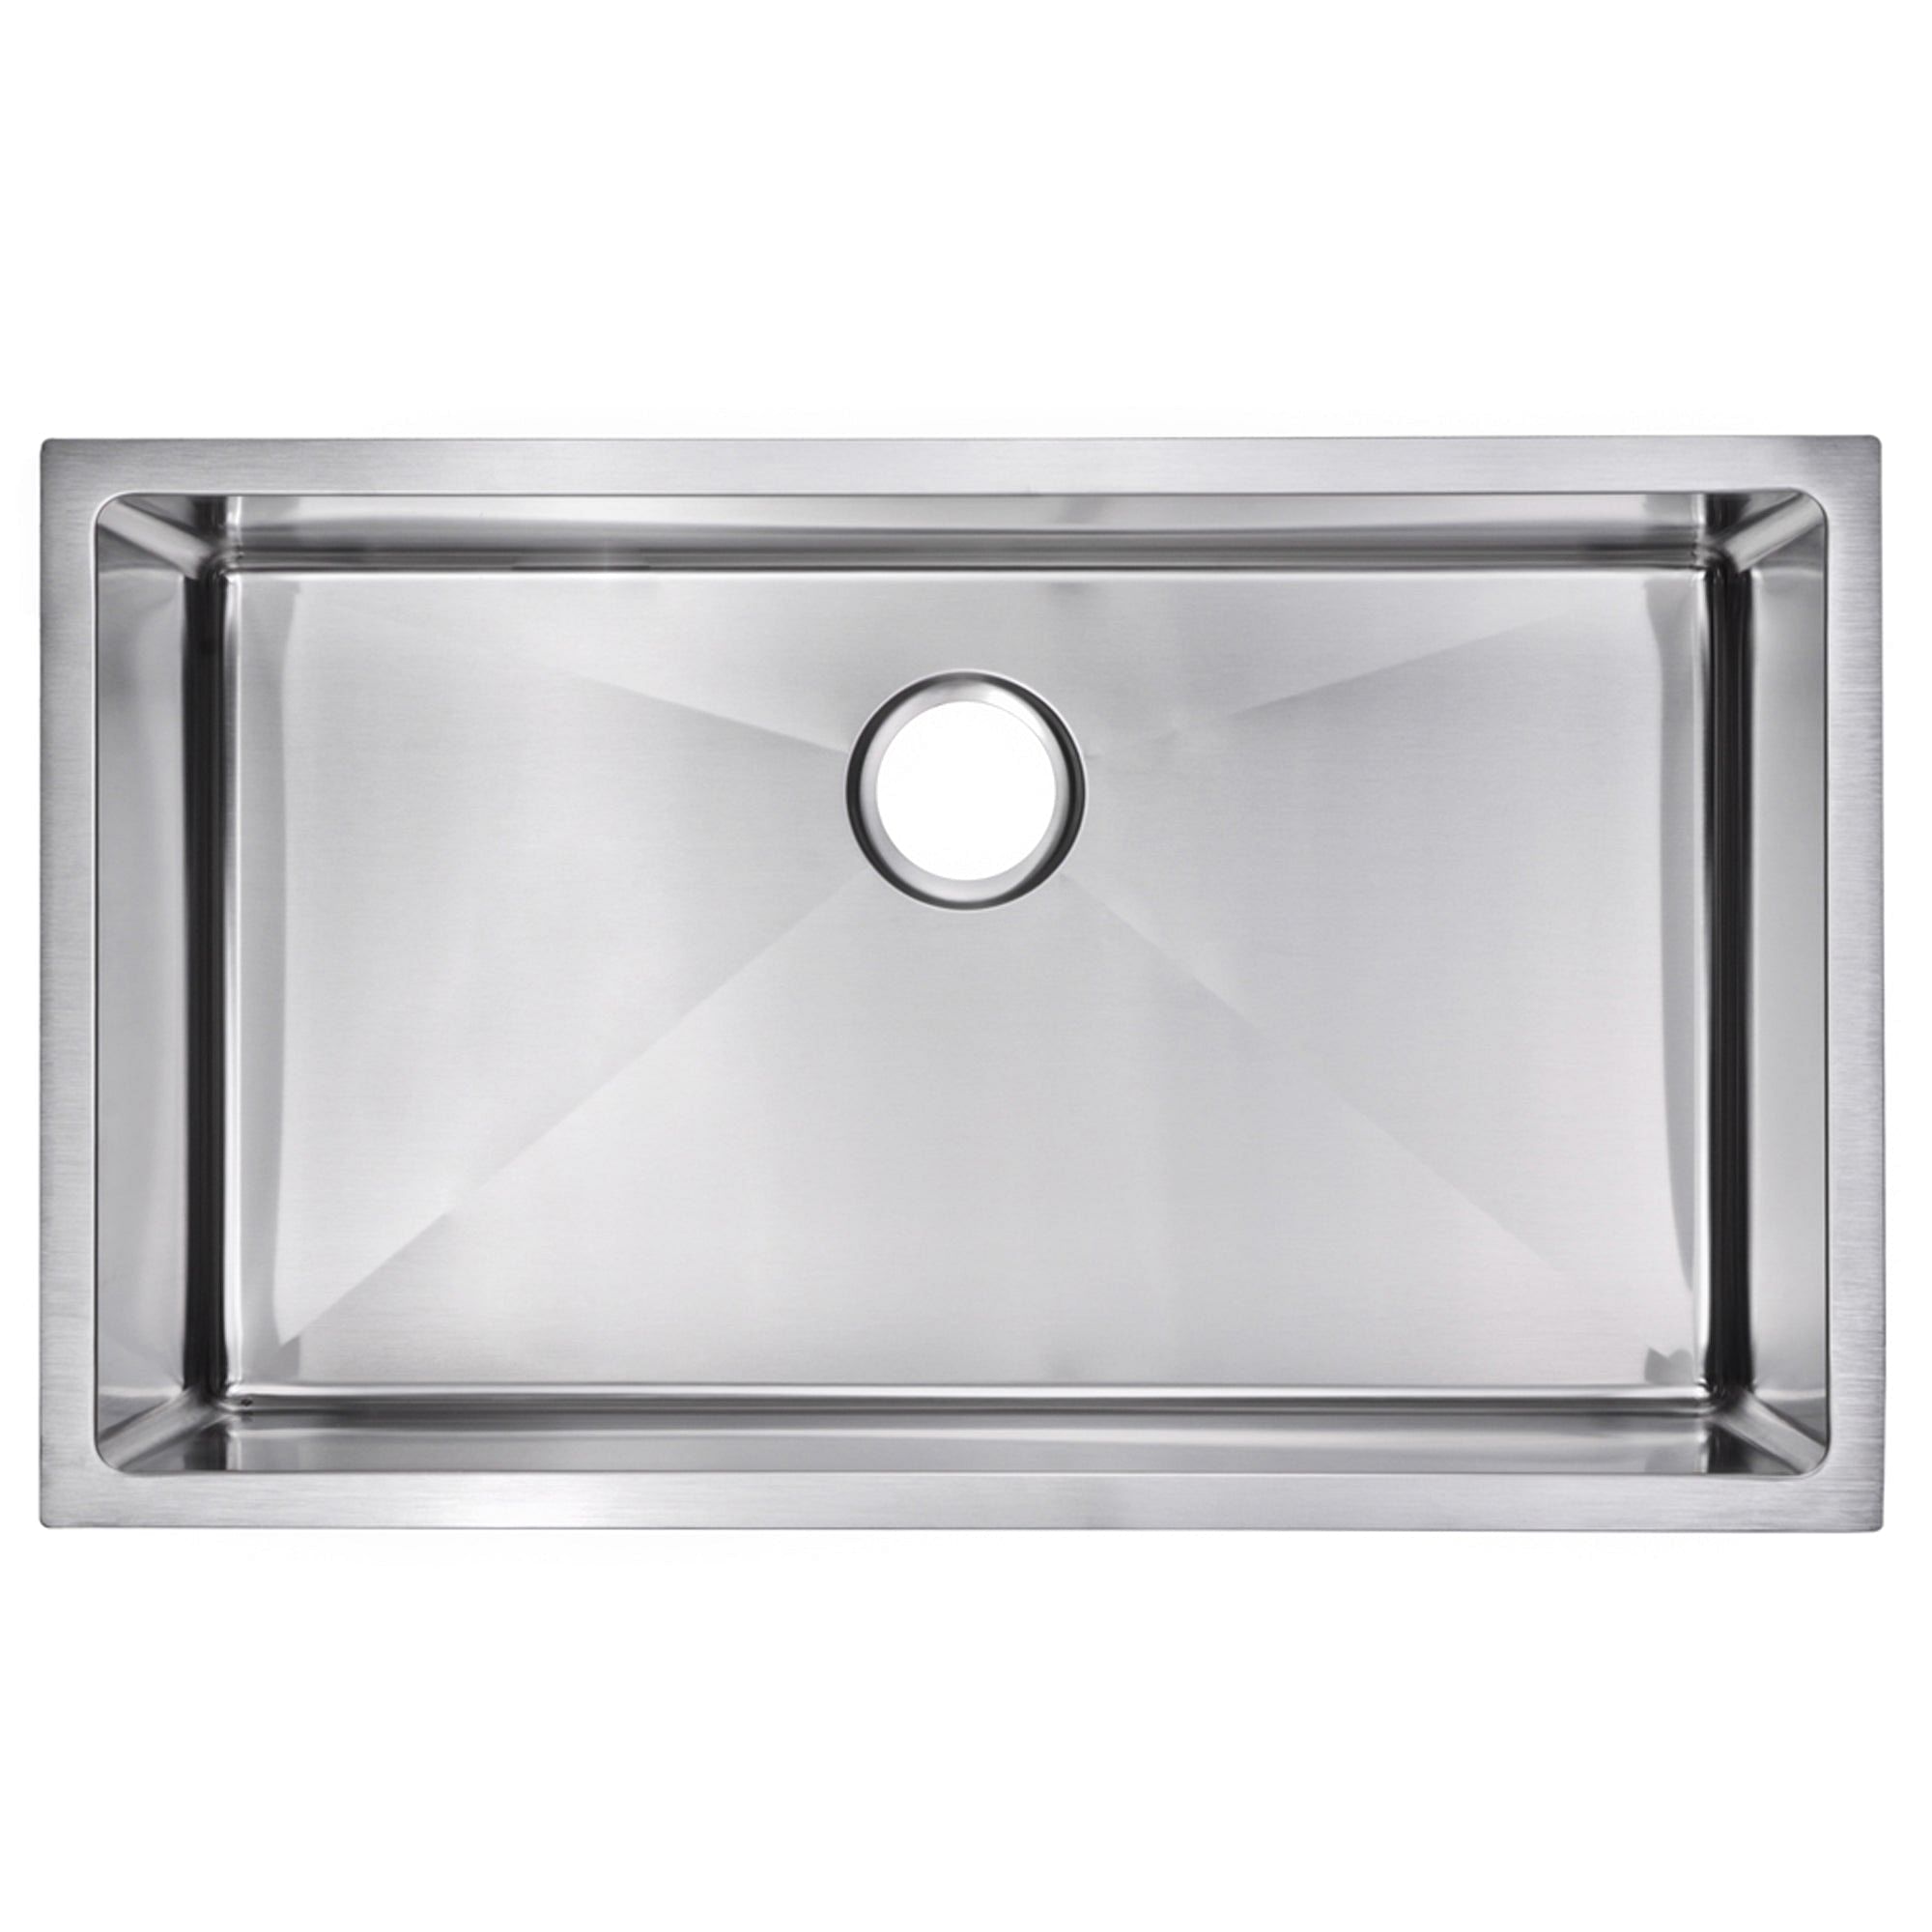 32 Inch X 19 Inch 15mm Corner Radius Single Bowl Stainless Steel Hand Made Undermount Kitchen Sink